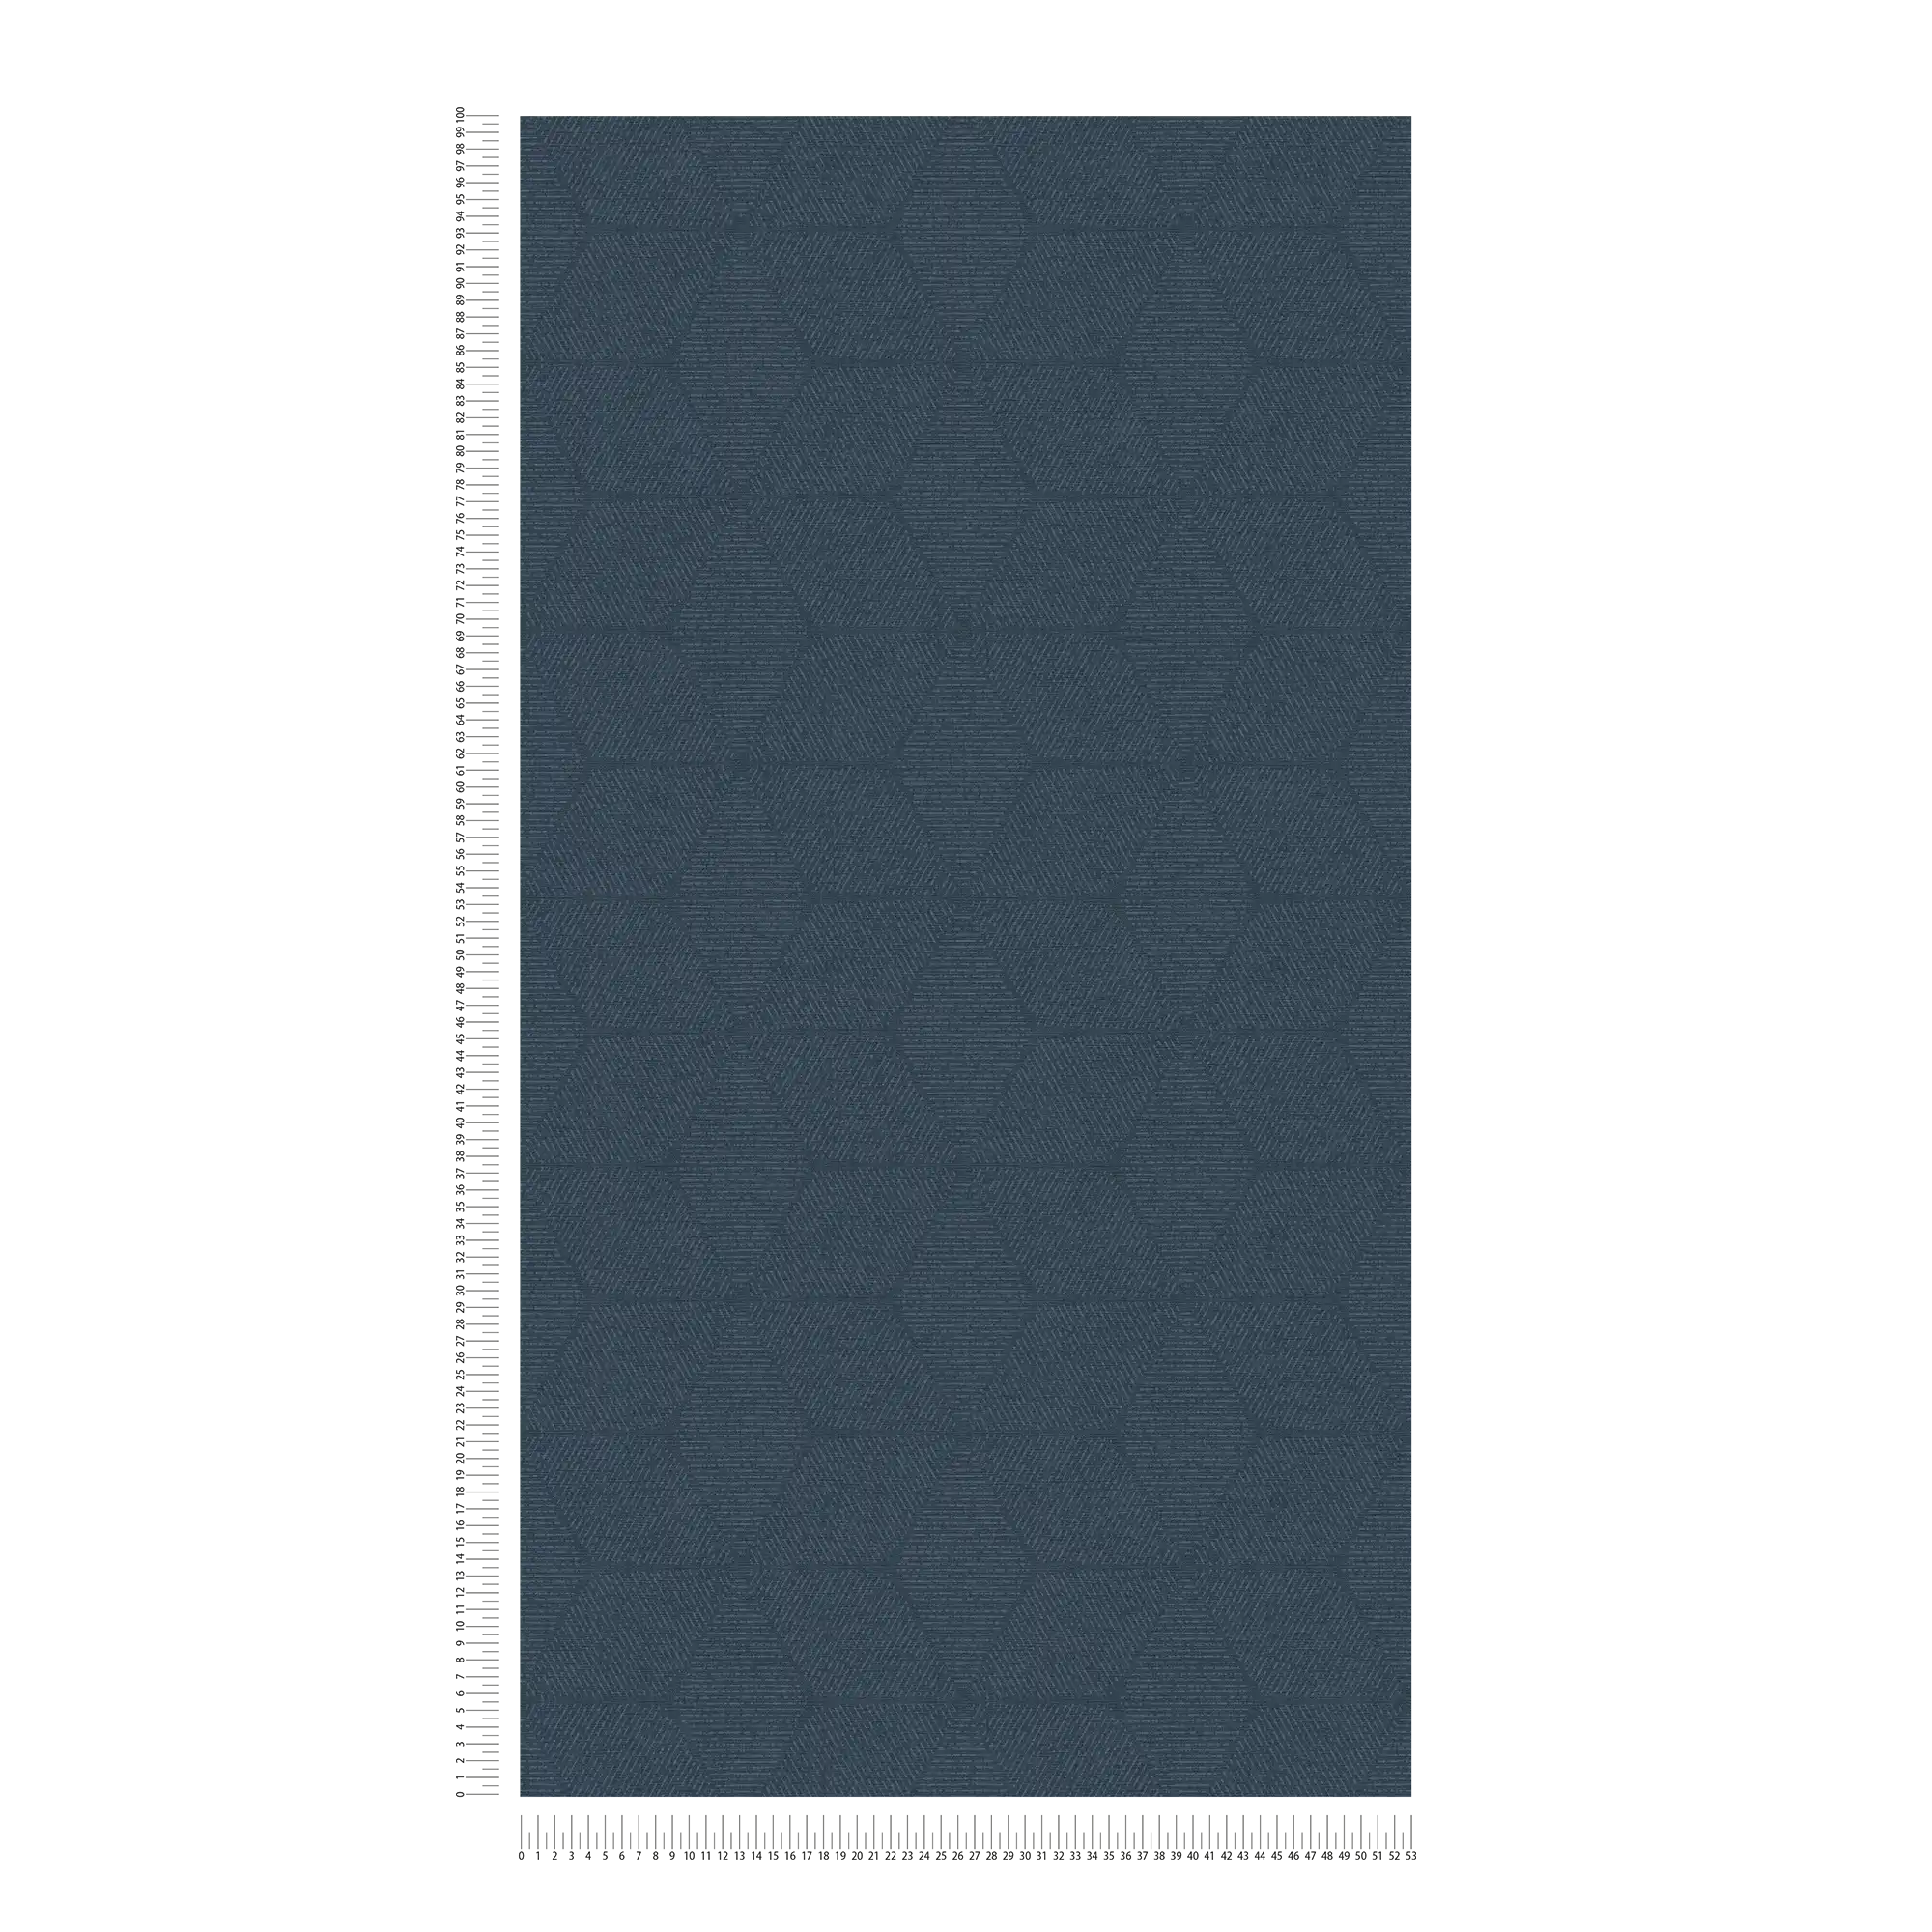             Carta da parati in tessuto non tessuto con motivo floreale monocromatico - blu
        